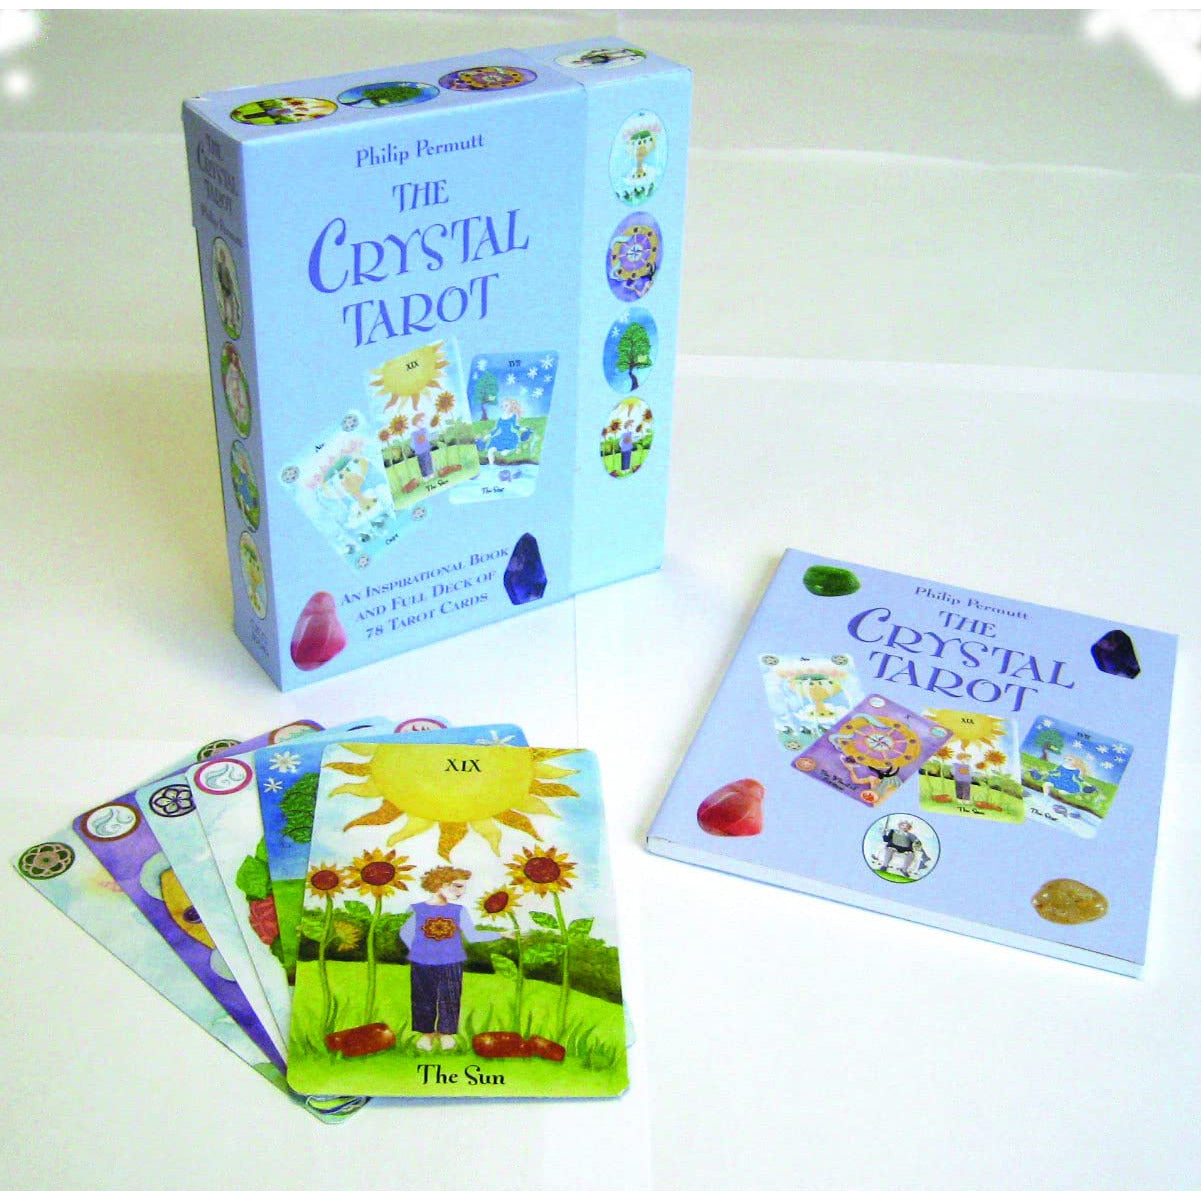 The Crystal Tarot: An inspirational book and full deck of 78 tarot cards